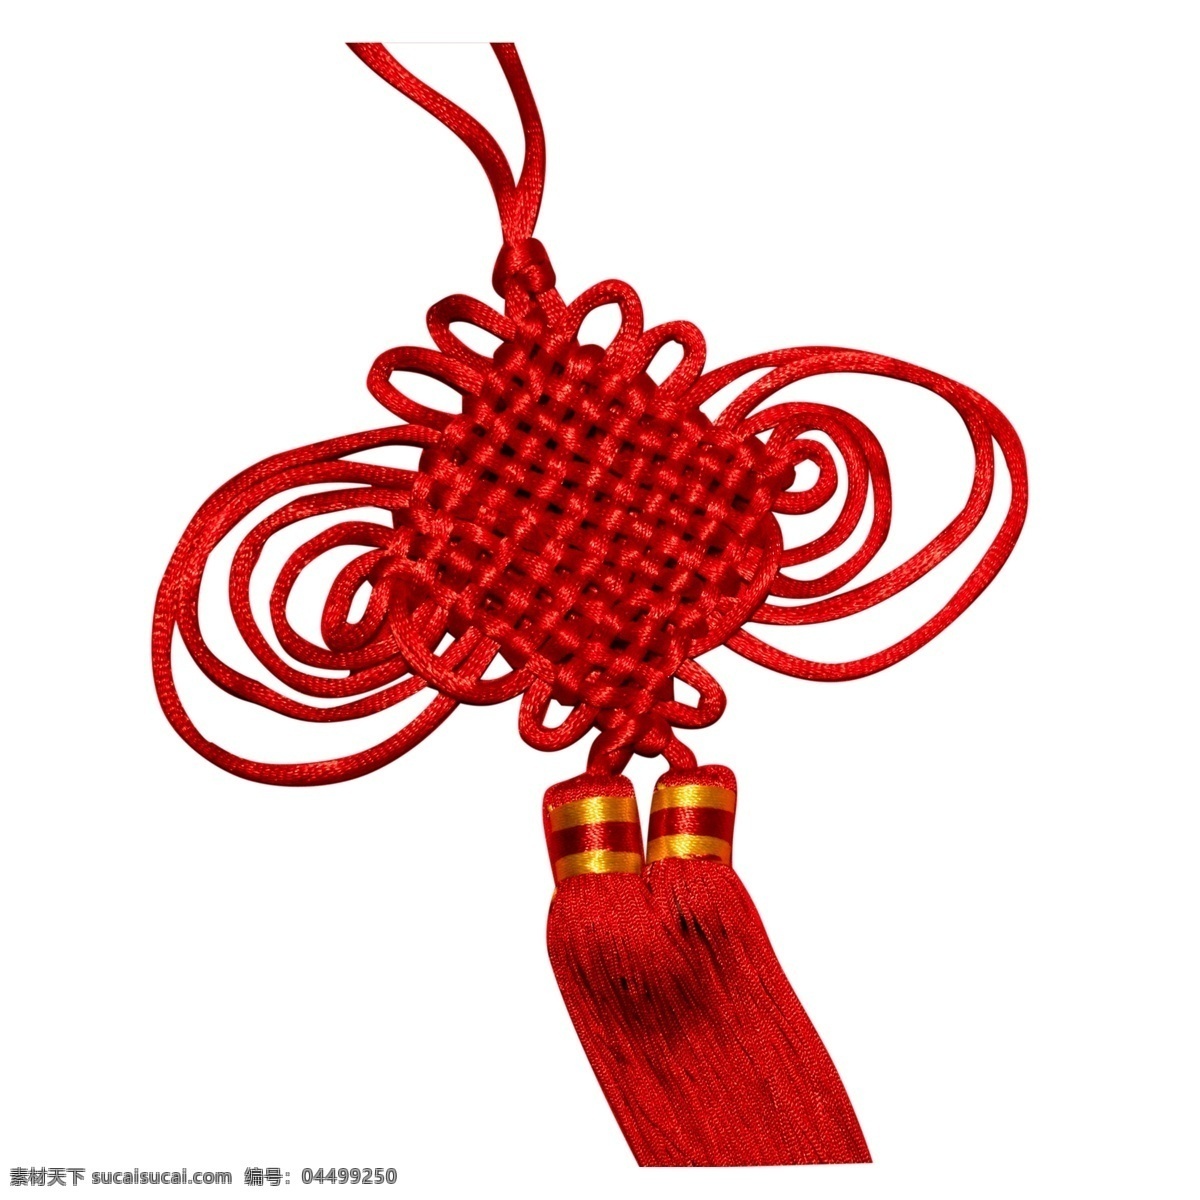 红色 传统 中国结 元素 创意 纹理 质感 吉祥 如意 古典 寓意 喜庆 庆祝 穗子 悬挂 妆点